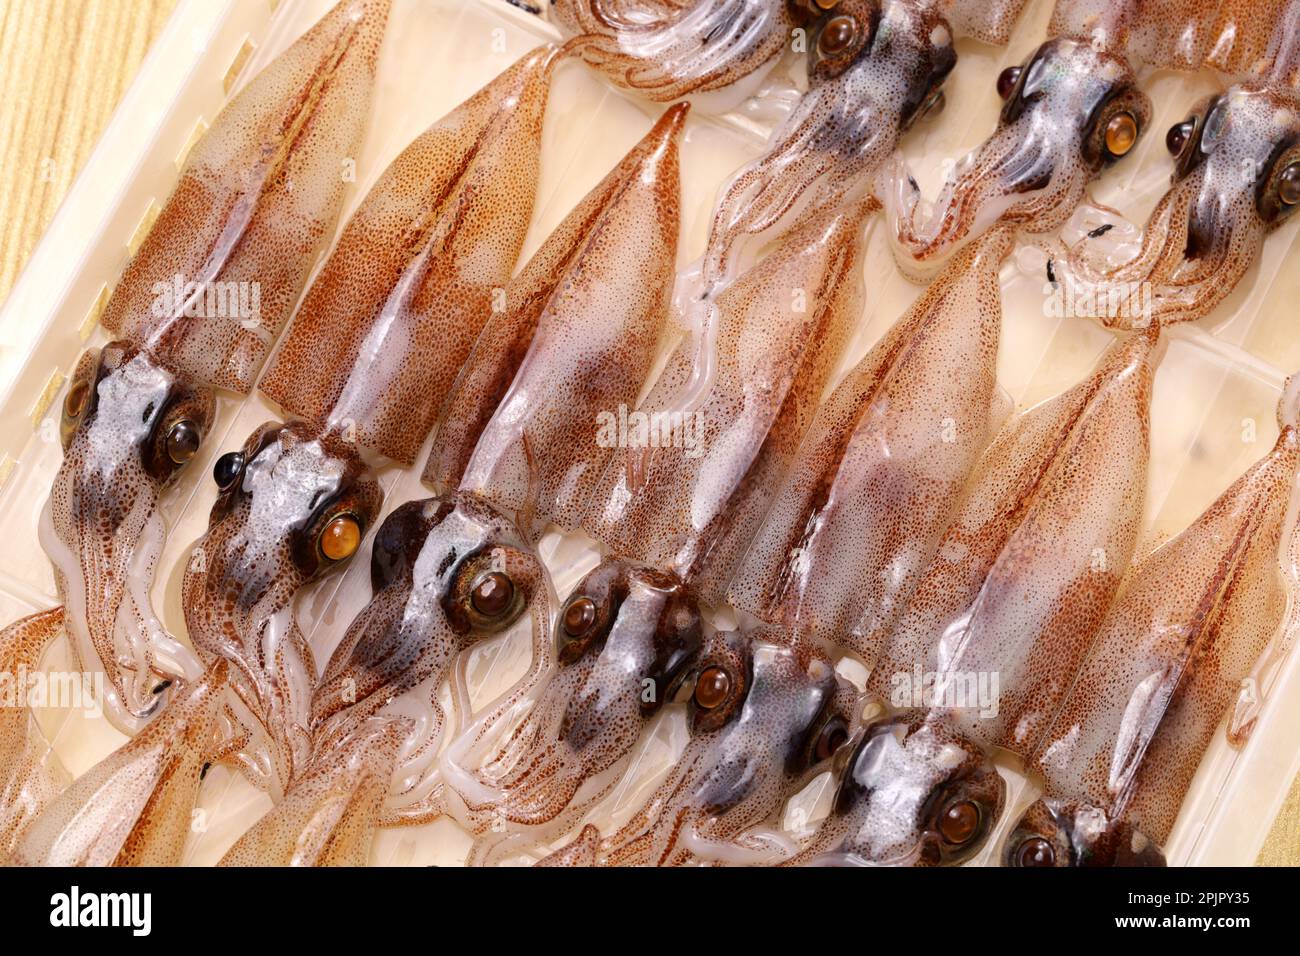 firefly squid ( hotaru ika ), Japanese cuisine ingredient Stock Photo